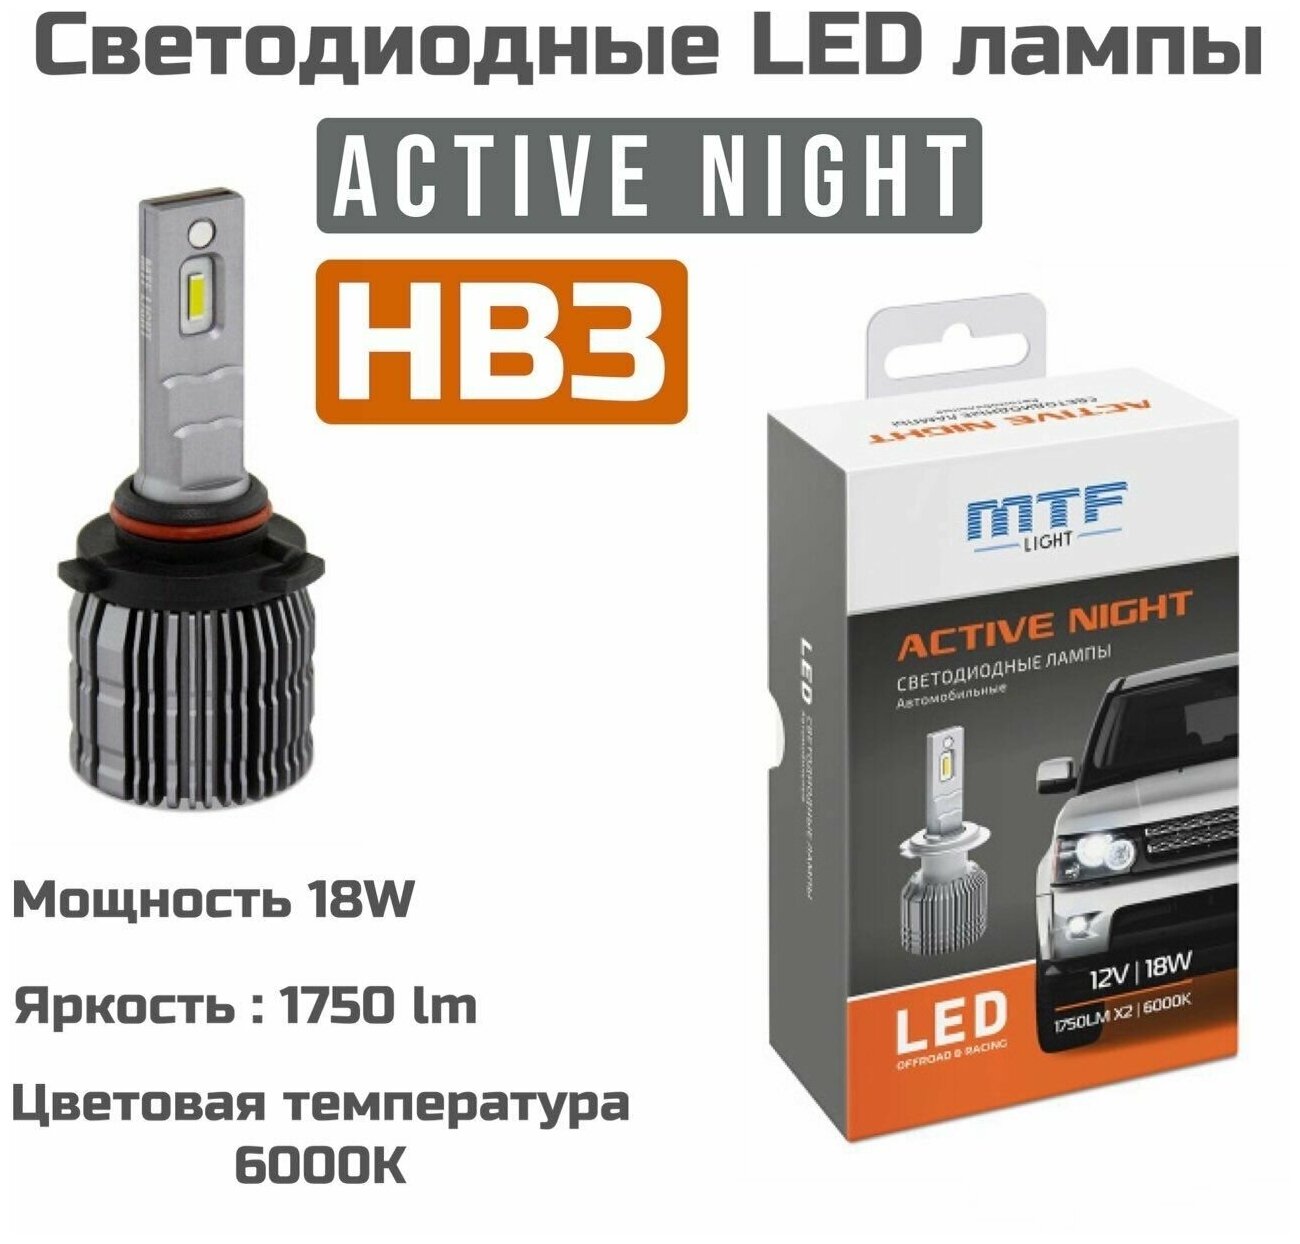 Светодиодные лампы MTF Light ACTIVE NIGHT HB3 6000K